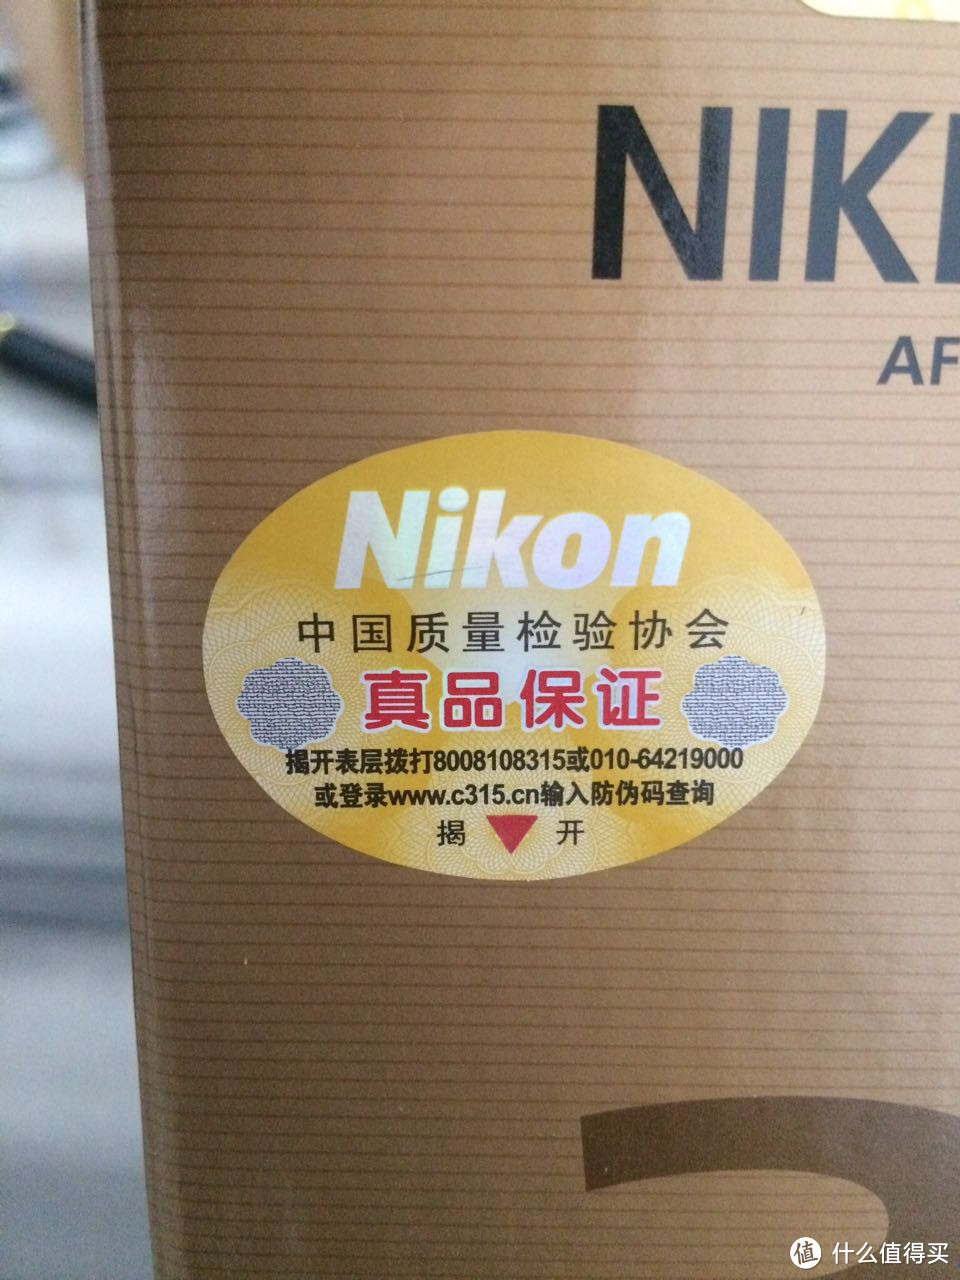 #原创新人#双11入手Nikon 尼康 35/1.8G镜头 速度到货 开箱晒物